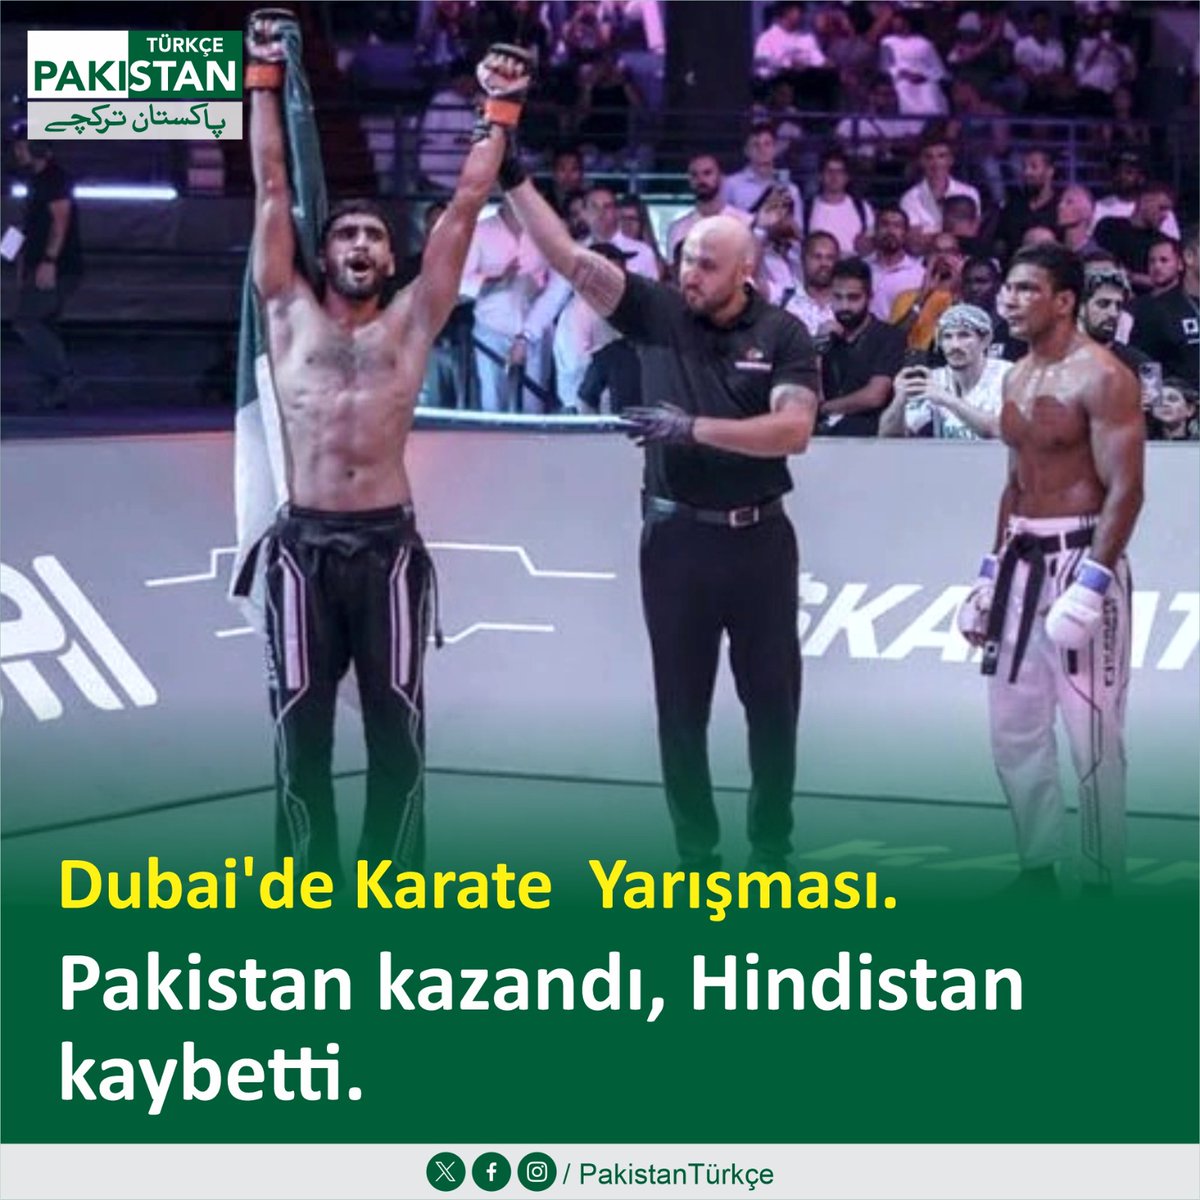 Pakistan, Birleşik Arap Emirlikleri'ndeki karate müsabakalarında Hindistan'ı 1-2 puandan mağlup etti. İlk müsabakada Pakistan'dan Rızvan Ali ile Hindistan'dan Poon Gupta arasında oldu ve Hindistan kaybetti .Son müsabakada Pakistanlı kaptan Hintli rakibinden kazandı. #Pakistan